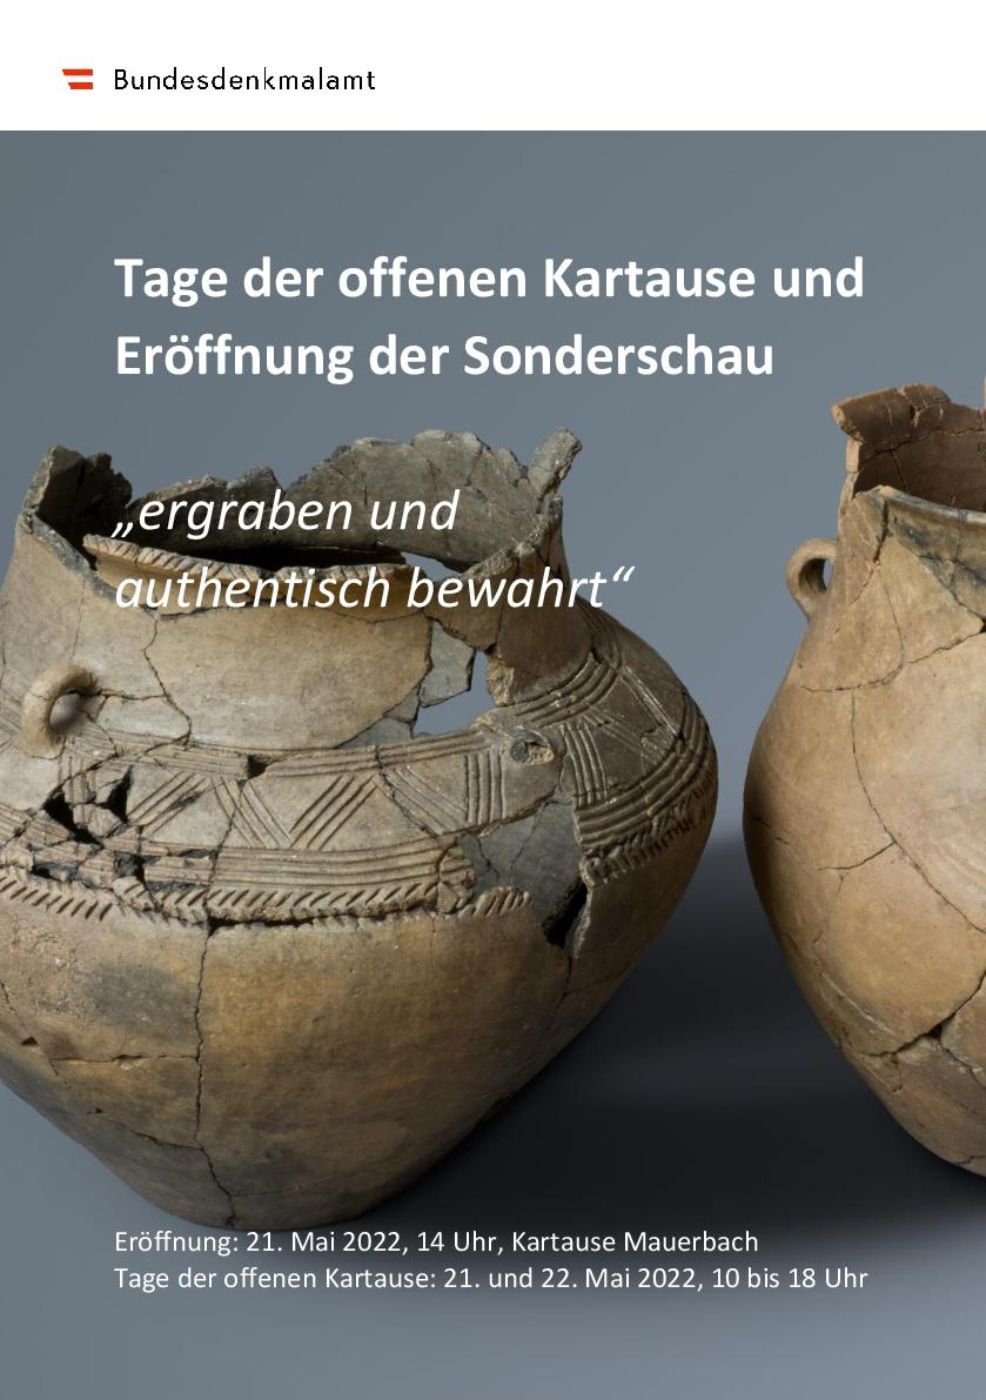 Plakat zur Sonderschau „ergraben und authentisch bewahrt“ der Kartause Mauerbach